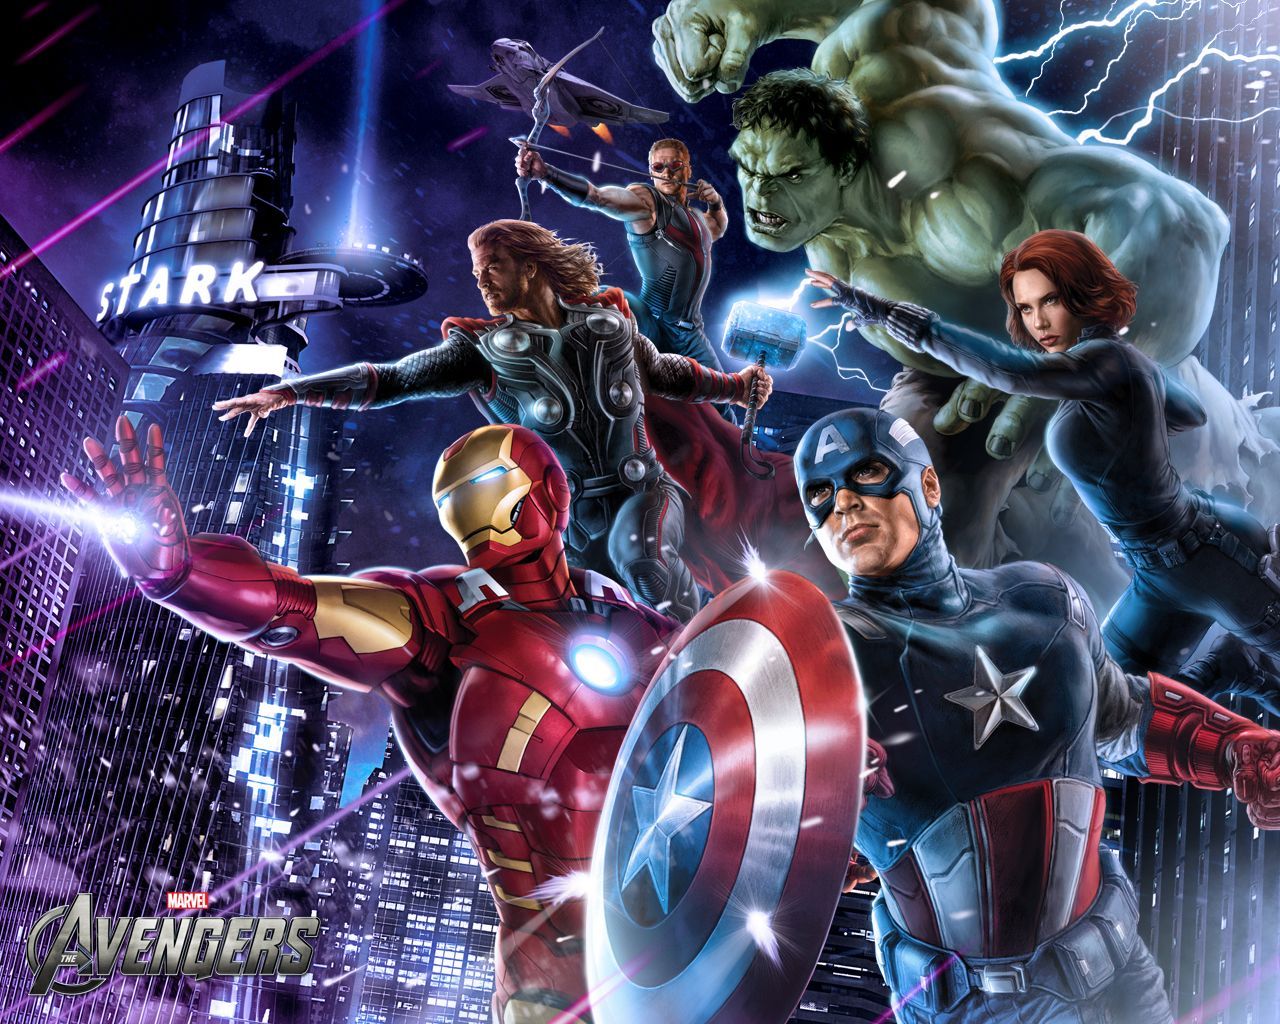 Avengers Movie Artwork. Avengers poster, Avengers superheroes, Avengers wallpaper